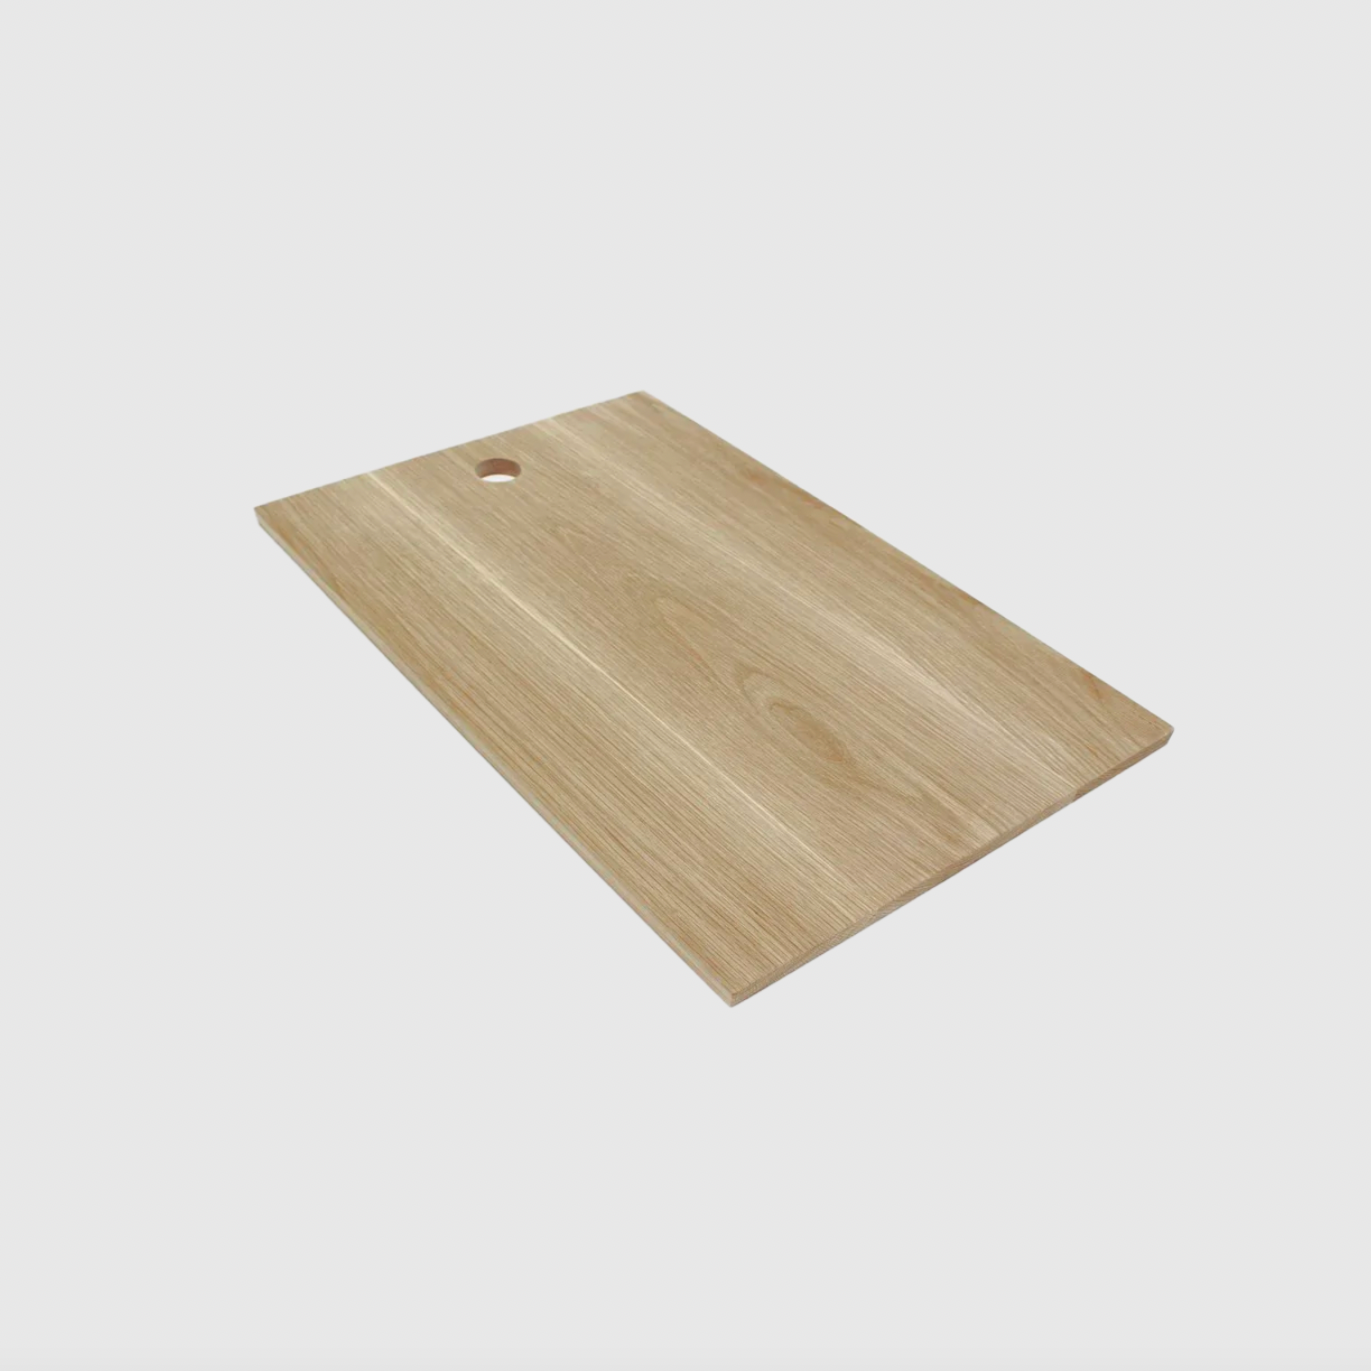 Platter/Chop Board - Rectangular